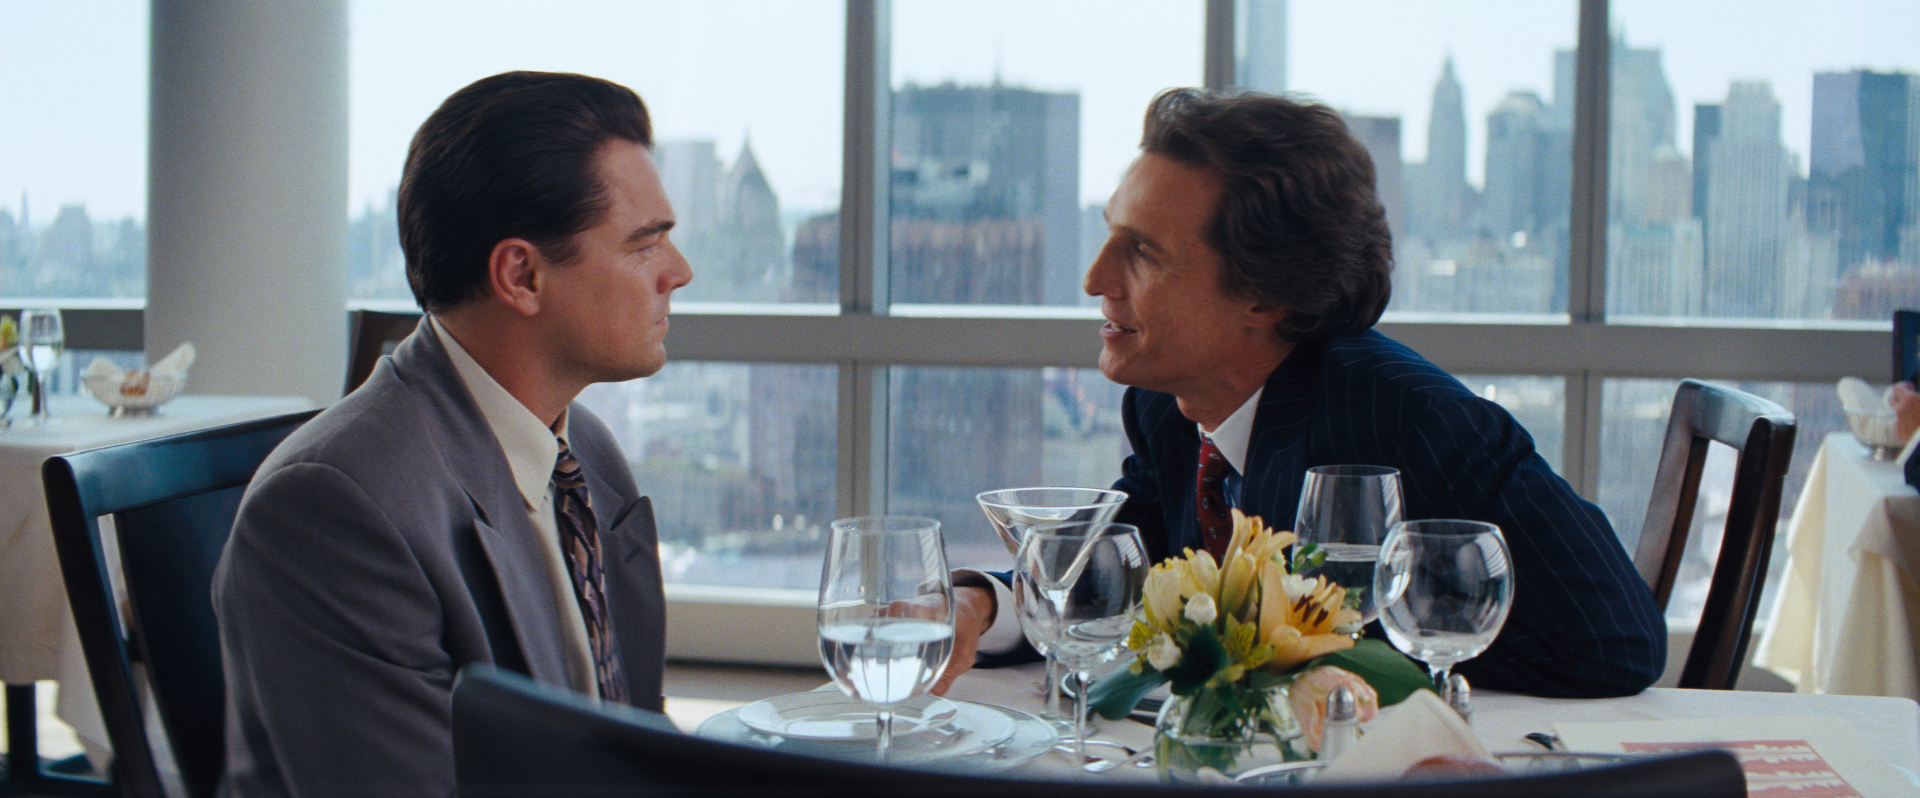 Still of Leonardo DiCaprio and Matthew McConaughey in Volstryto vilkas (2013)